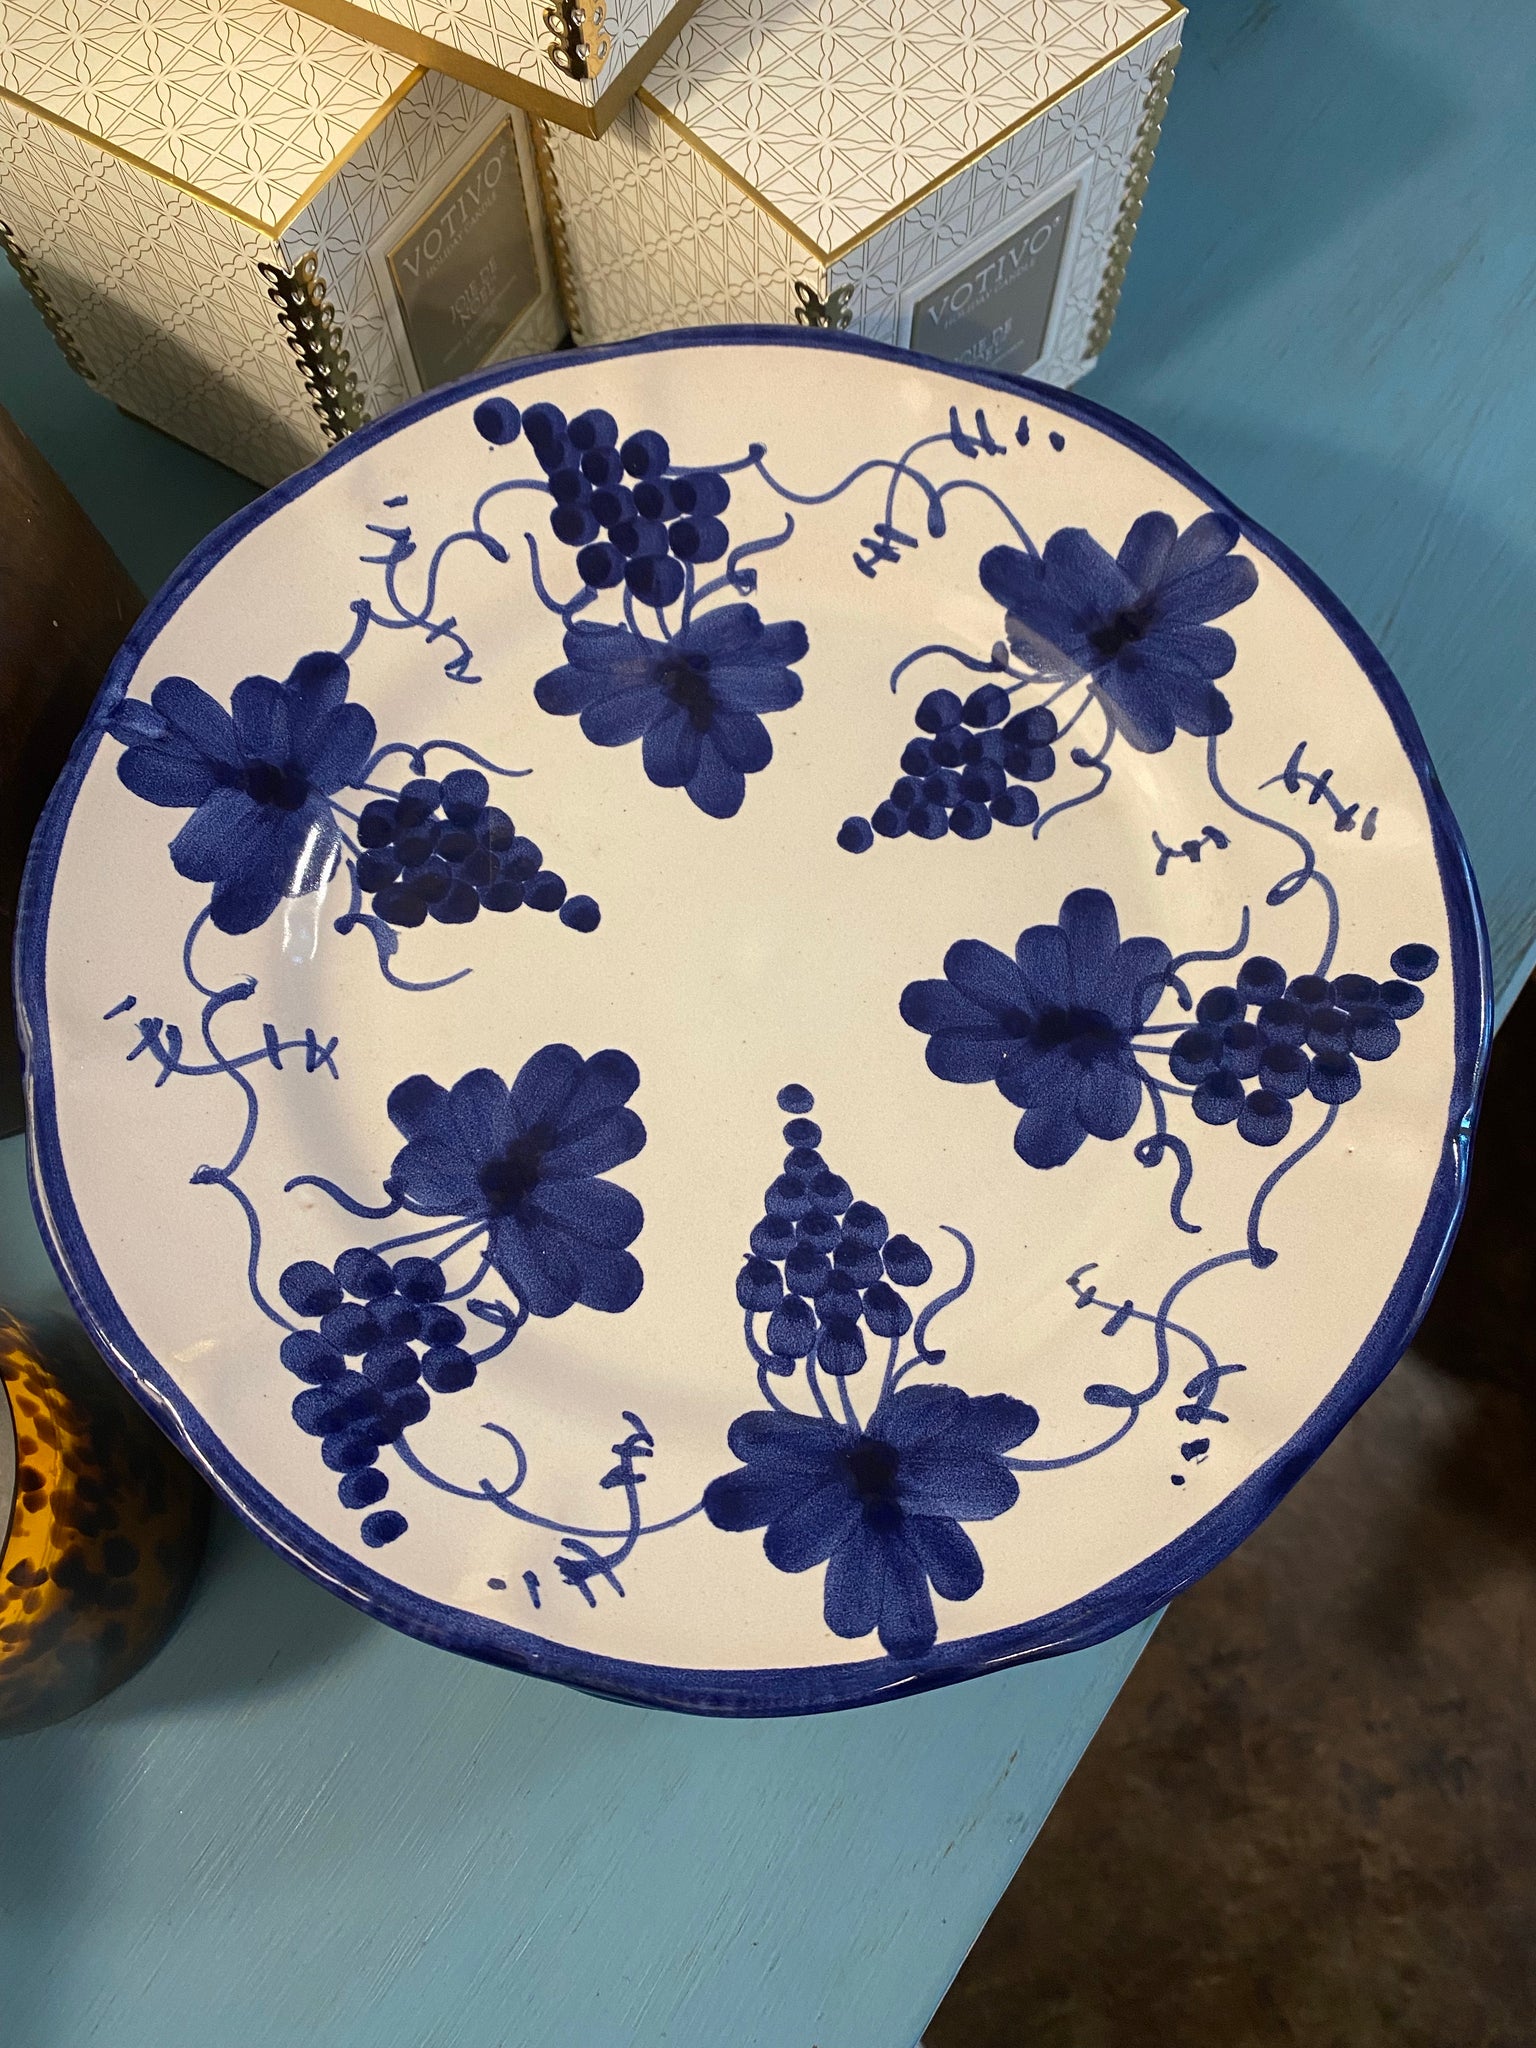 Blue and White "Nando Vietri" Plate, Italy